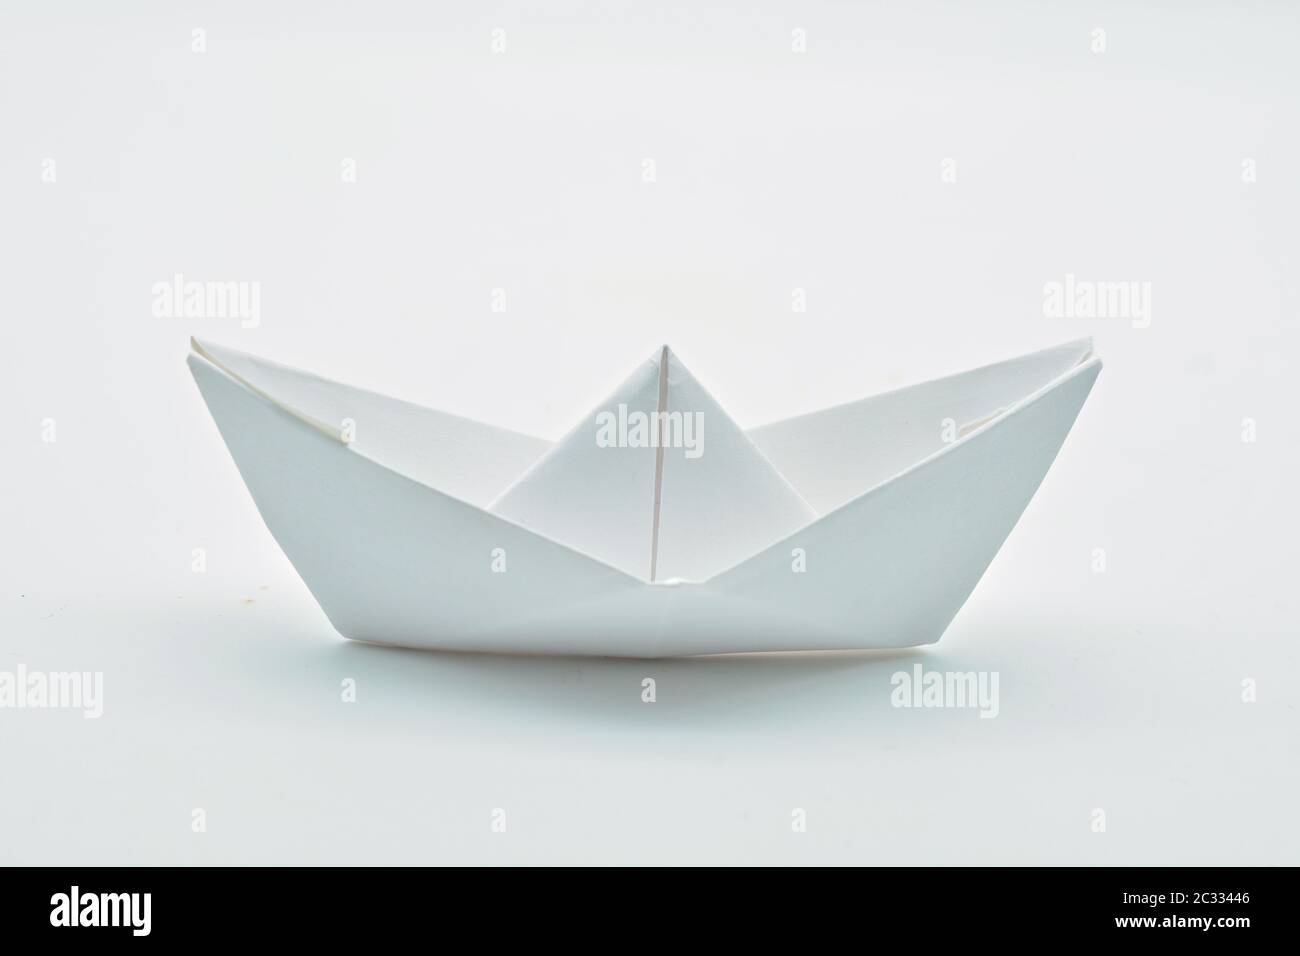 Barco de papel aislado sobre fondo blanco Stock Photo